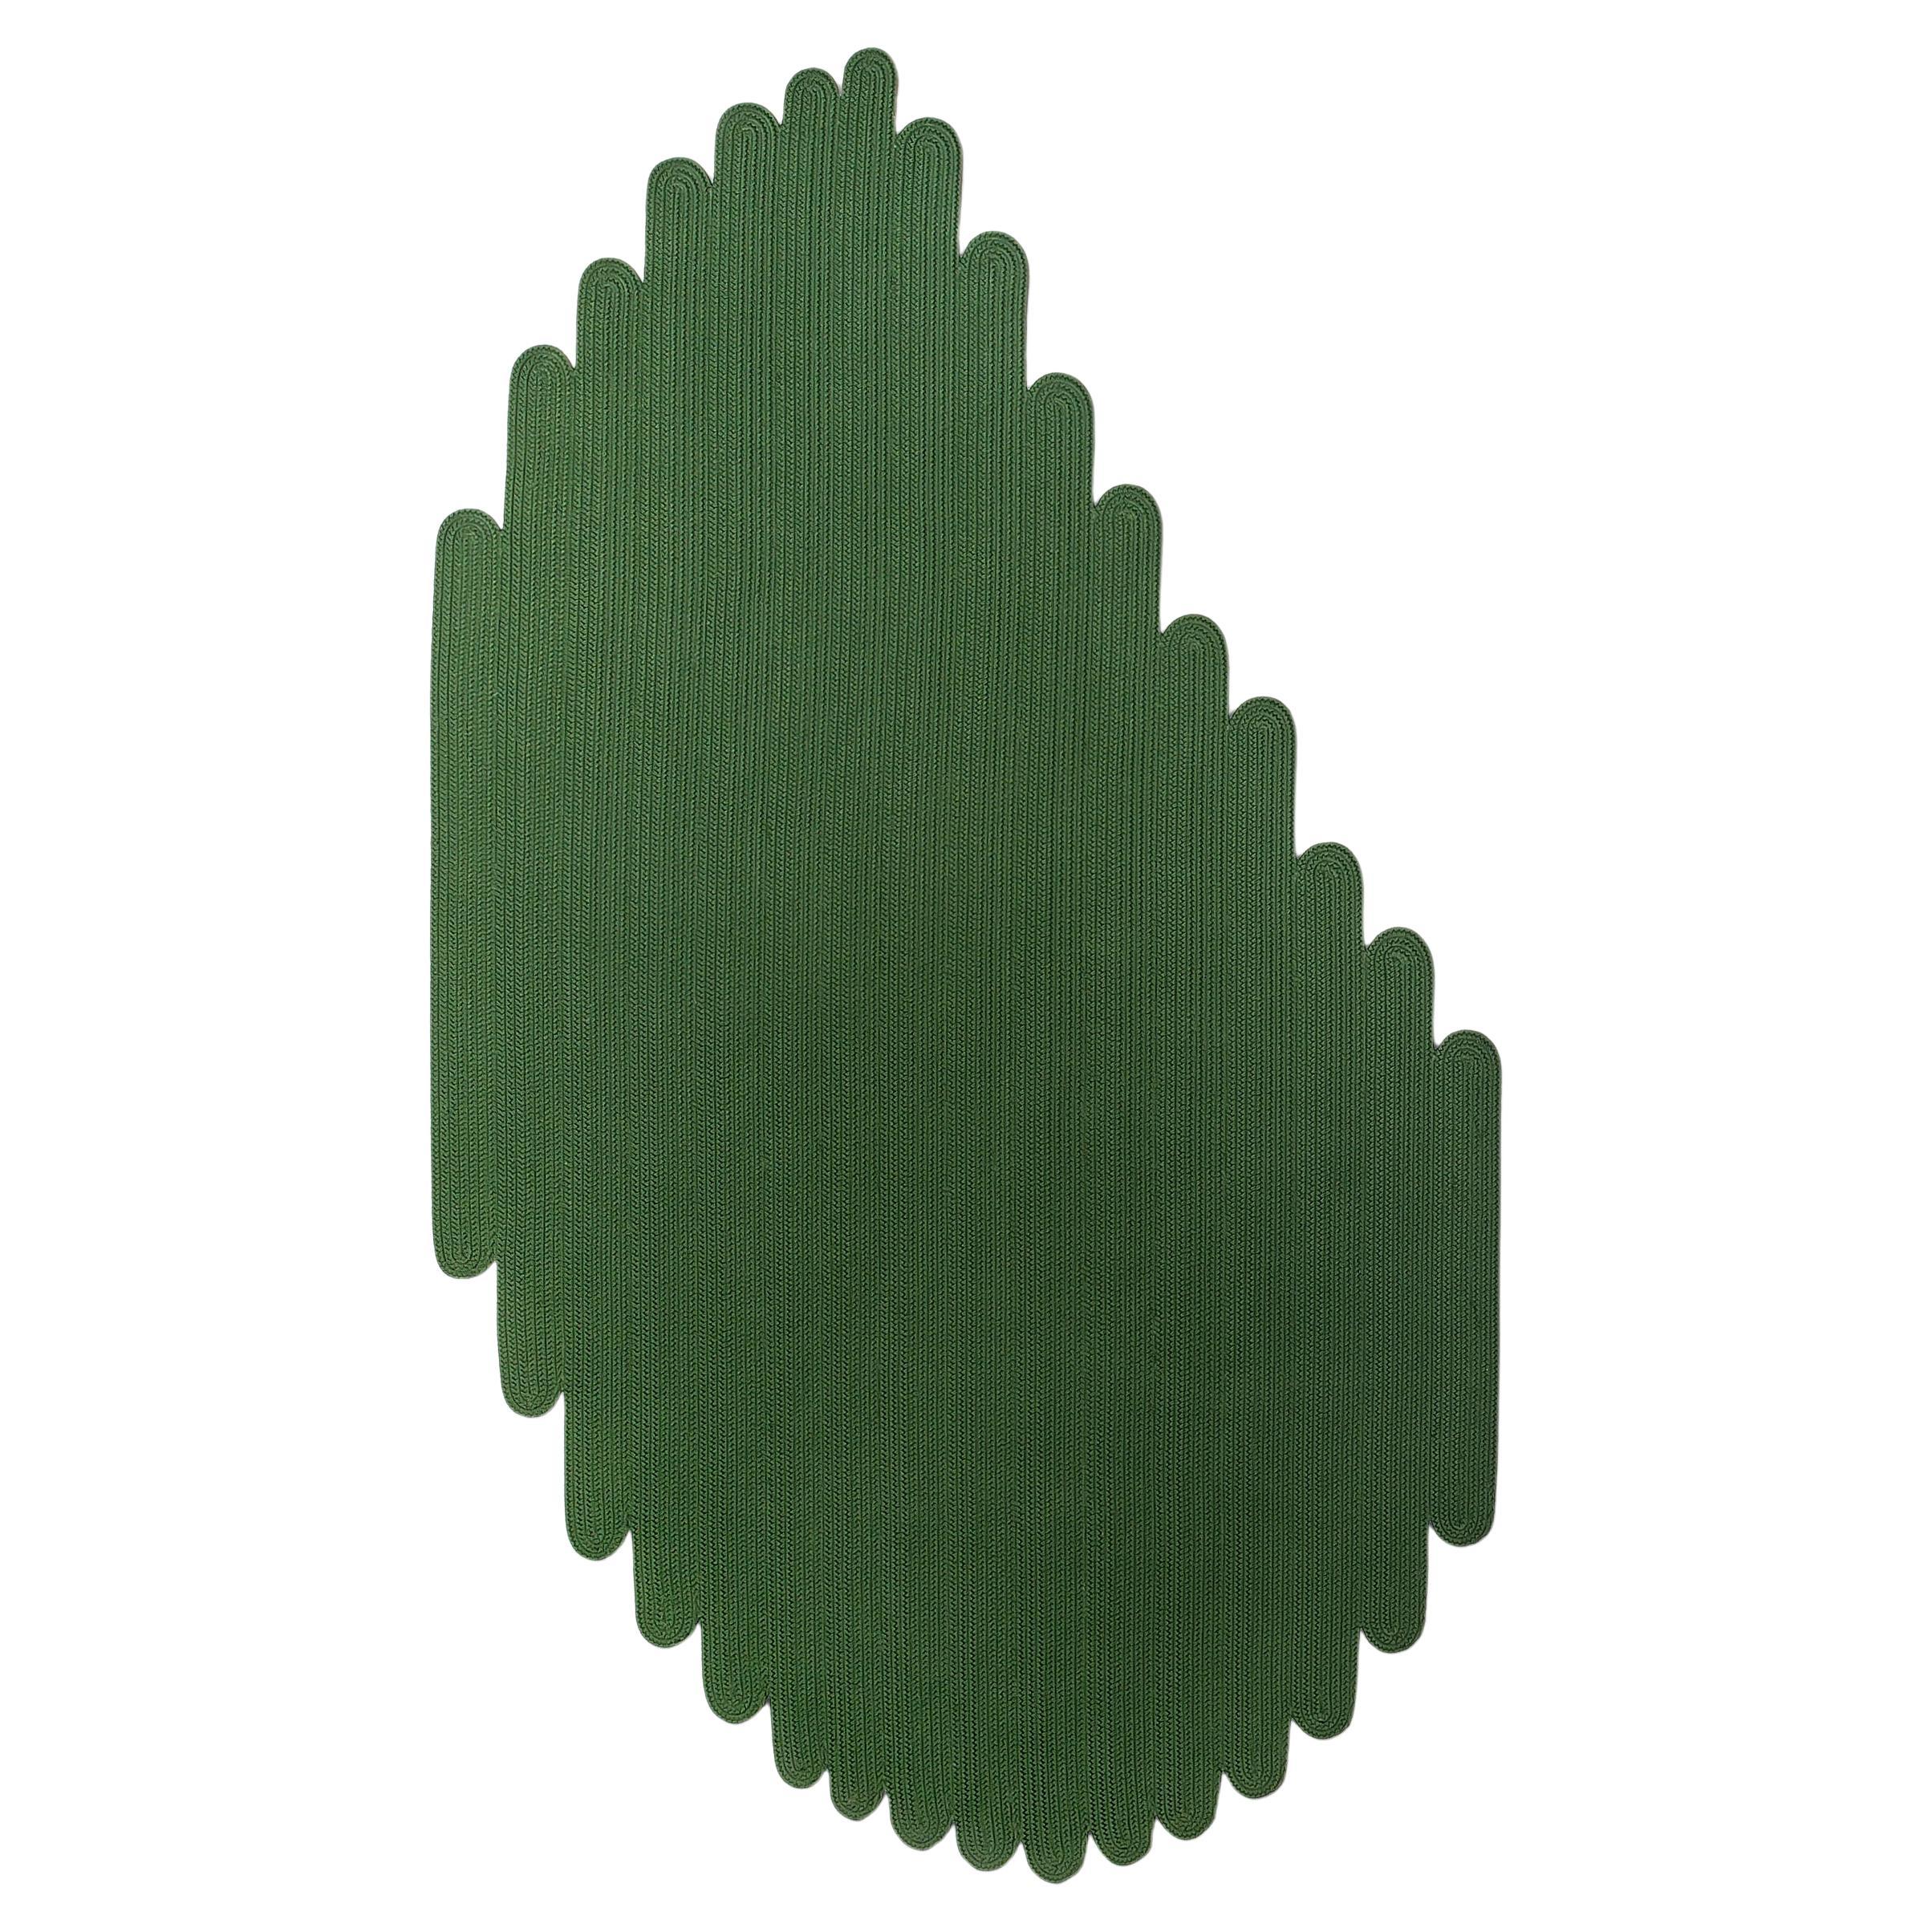 Tappeto forma foglia outdoor verde design italiano by Deanna Comellini 144x250cm